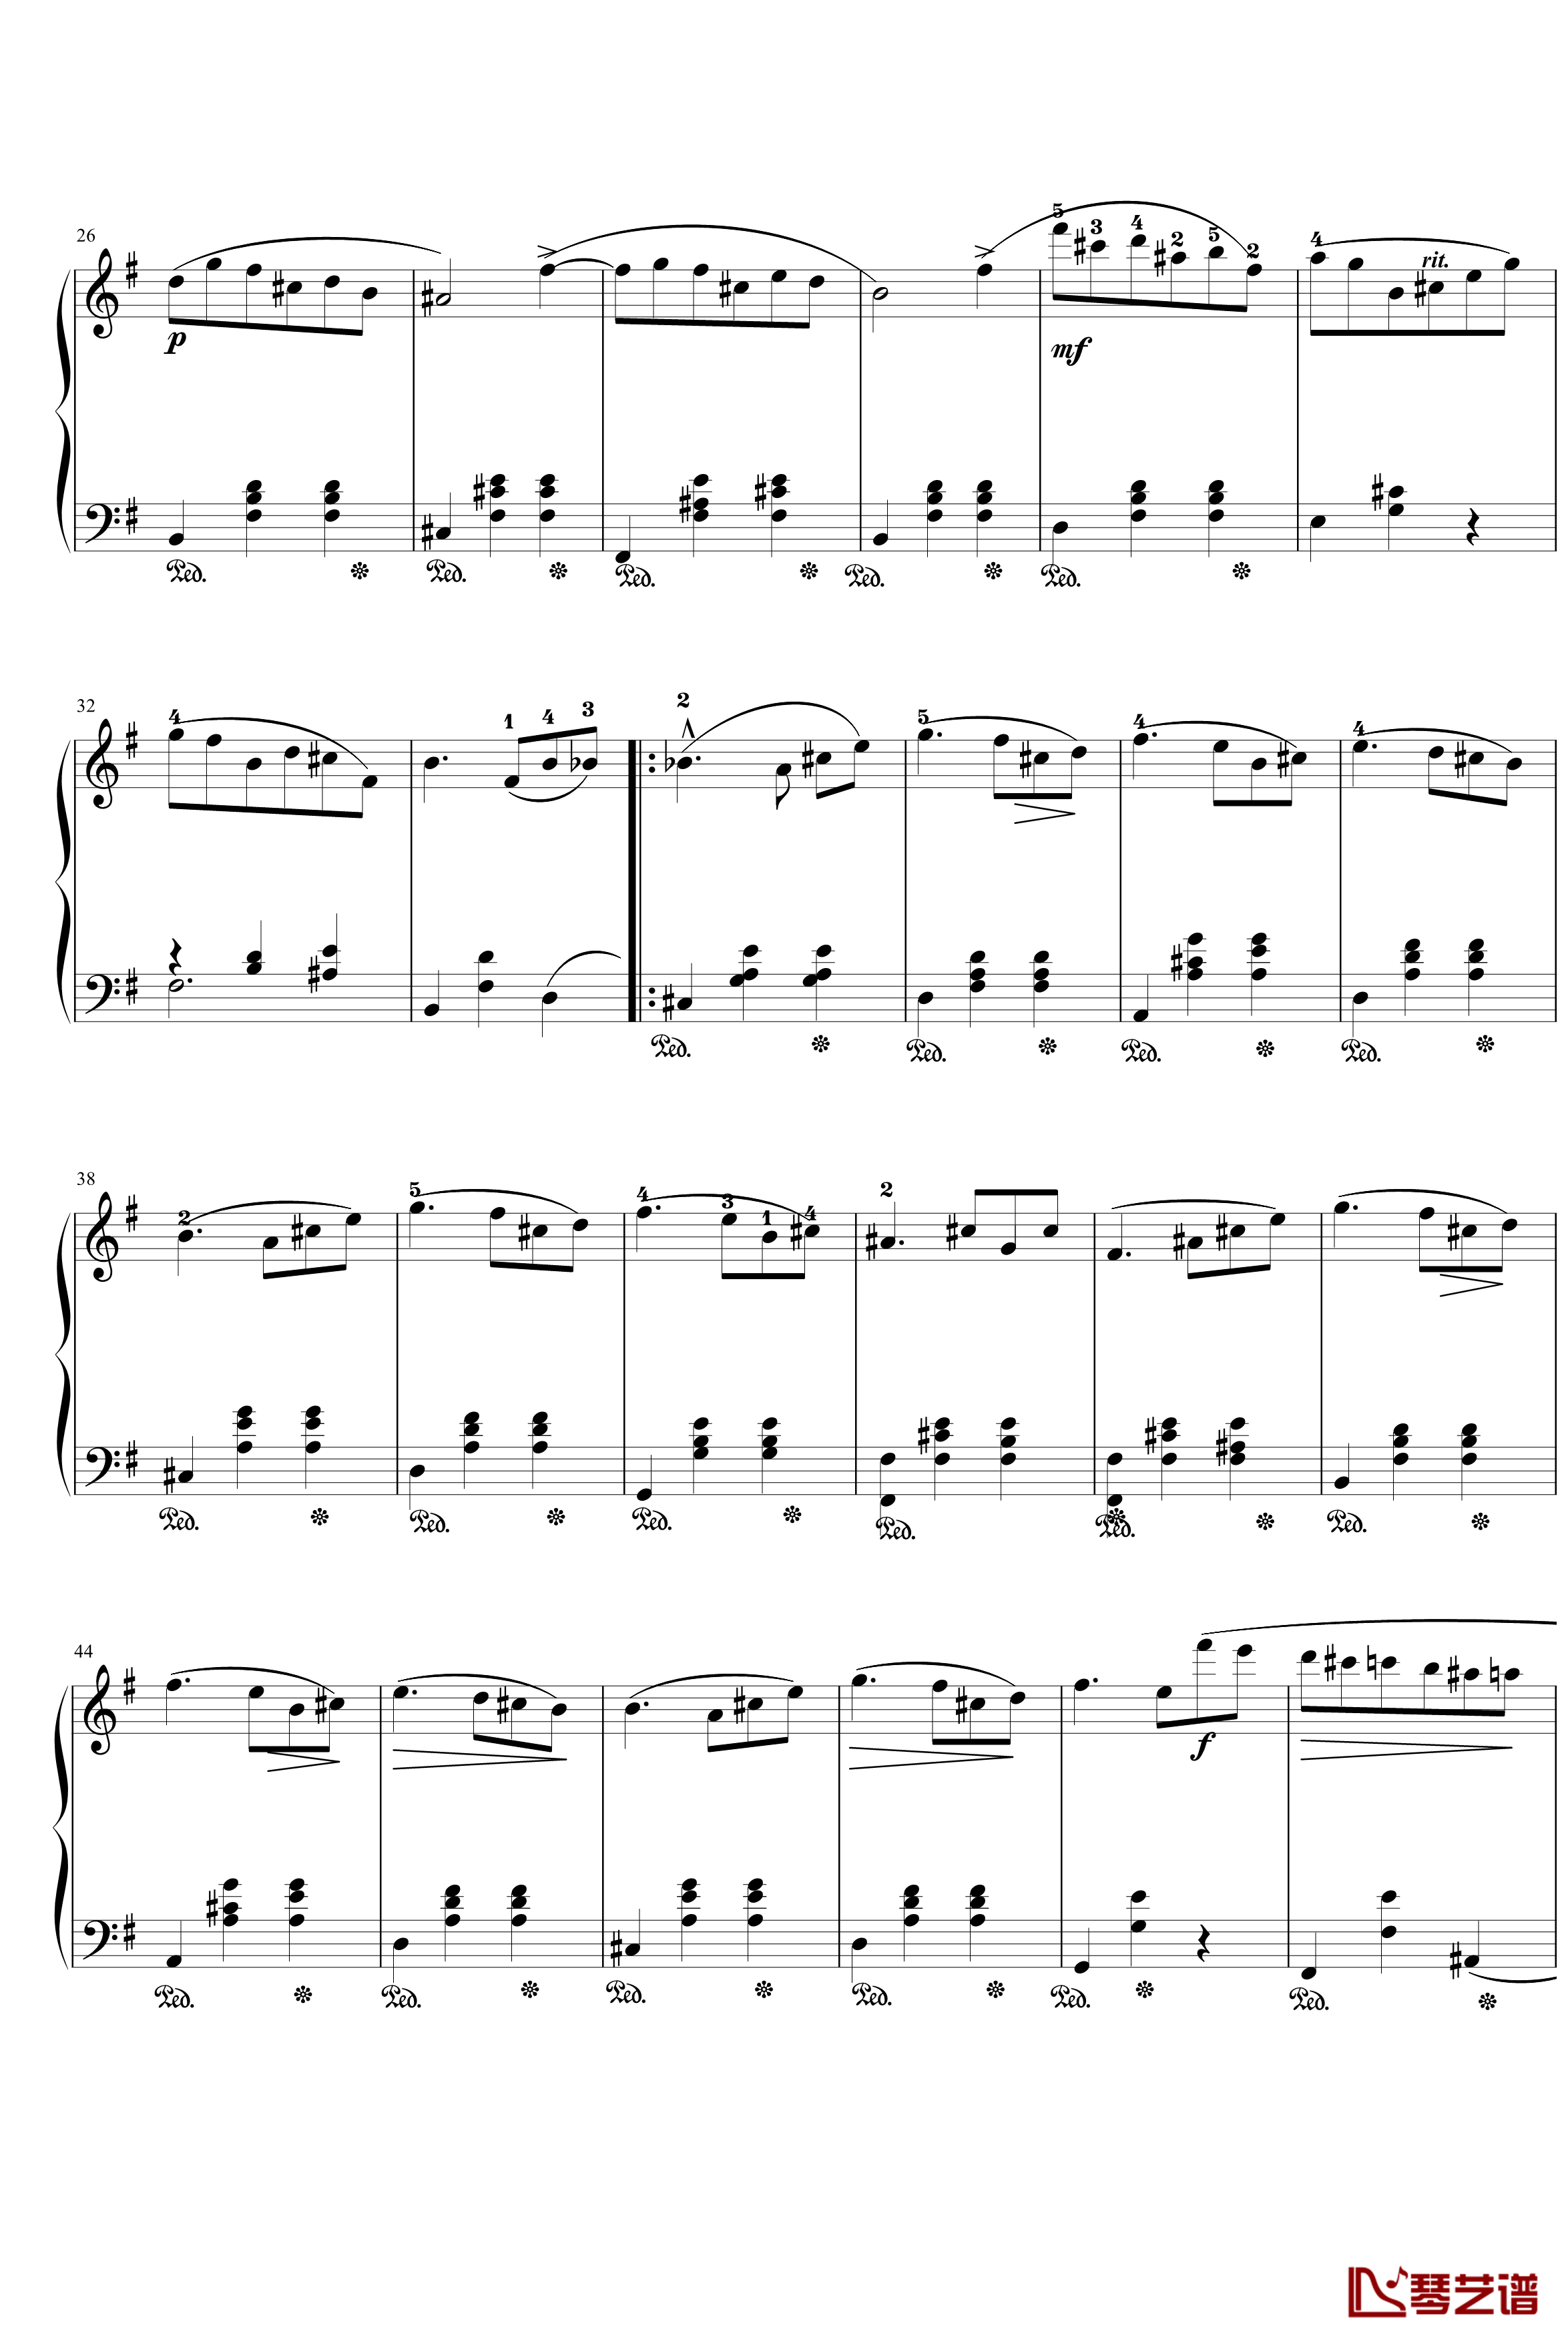 圆舞曲Op.69 No.2钢琴谱-肖邦-chopin